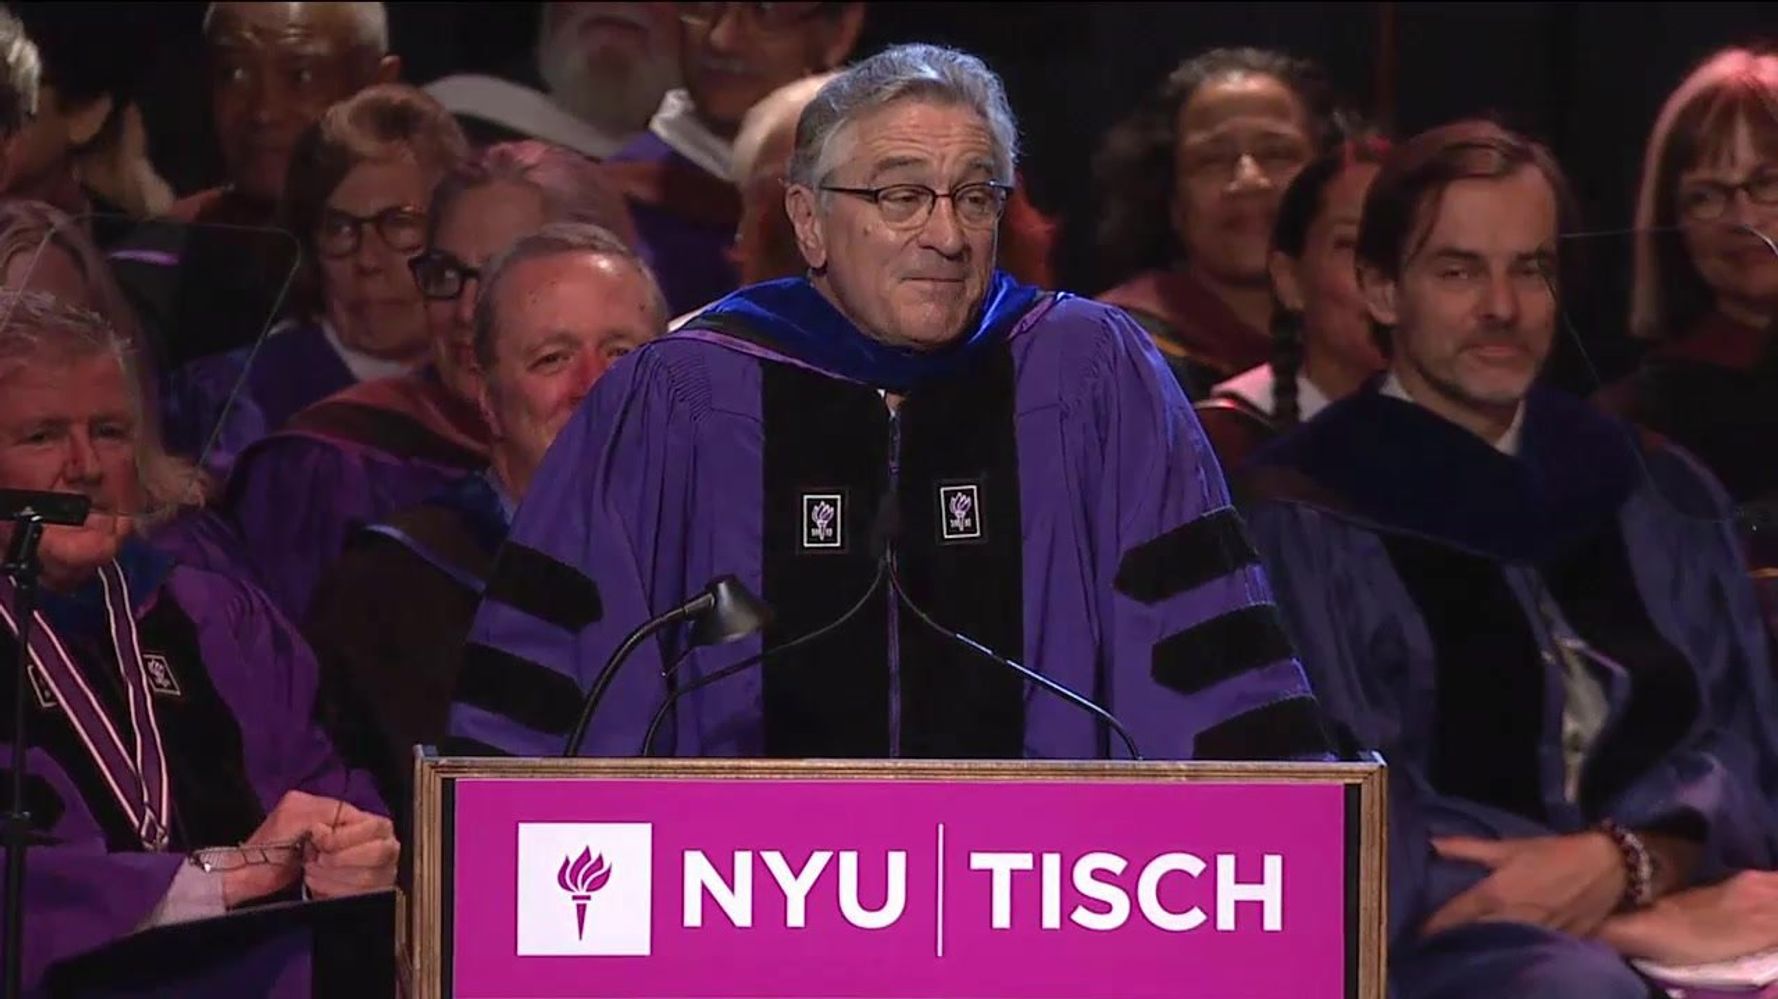 Robert De Niro Delivers Commencement Speech At NYU Tisch School Of The